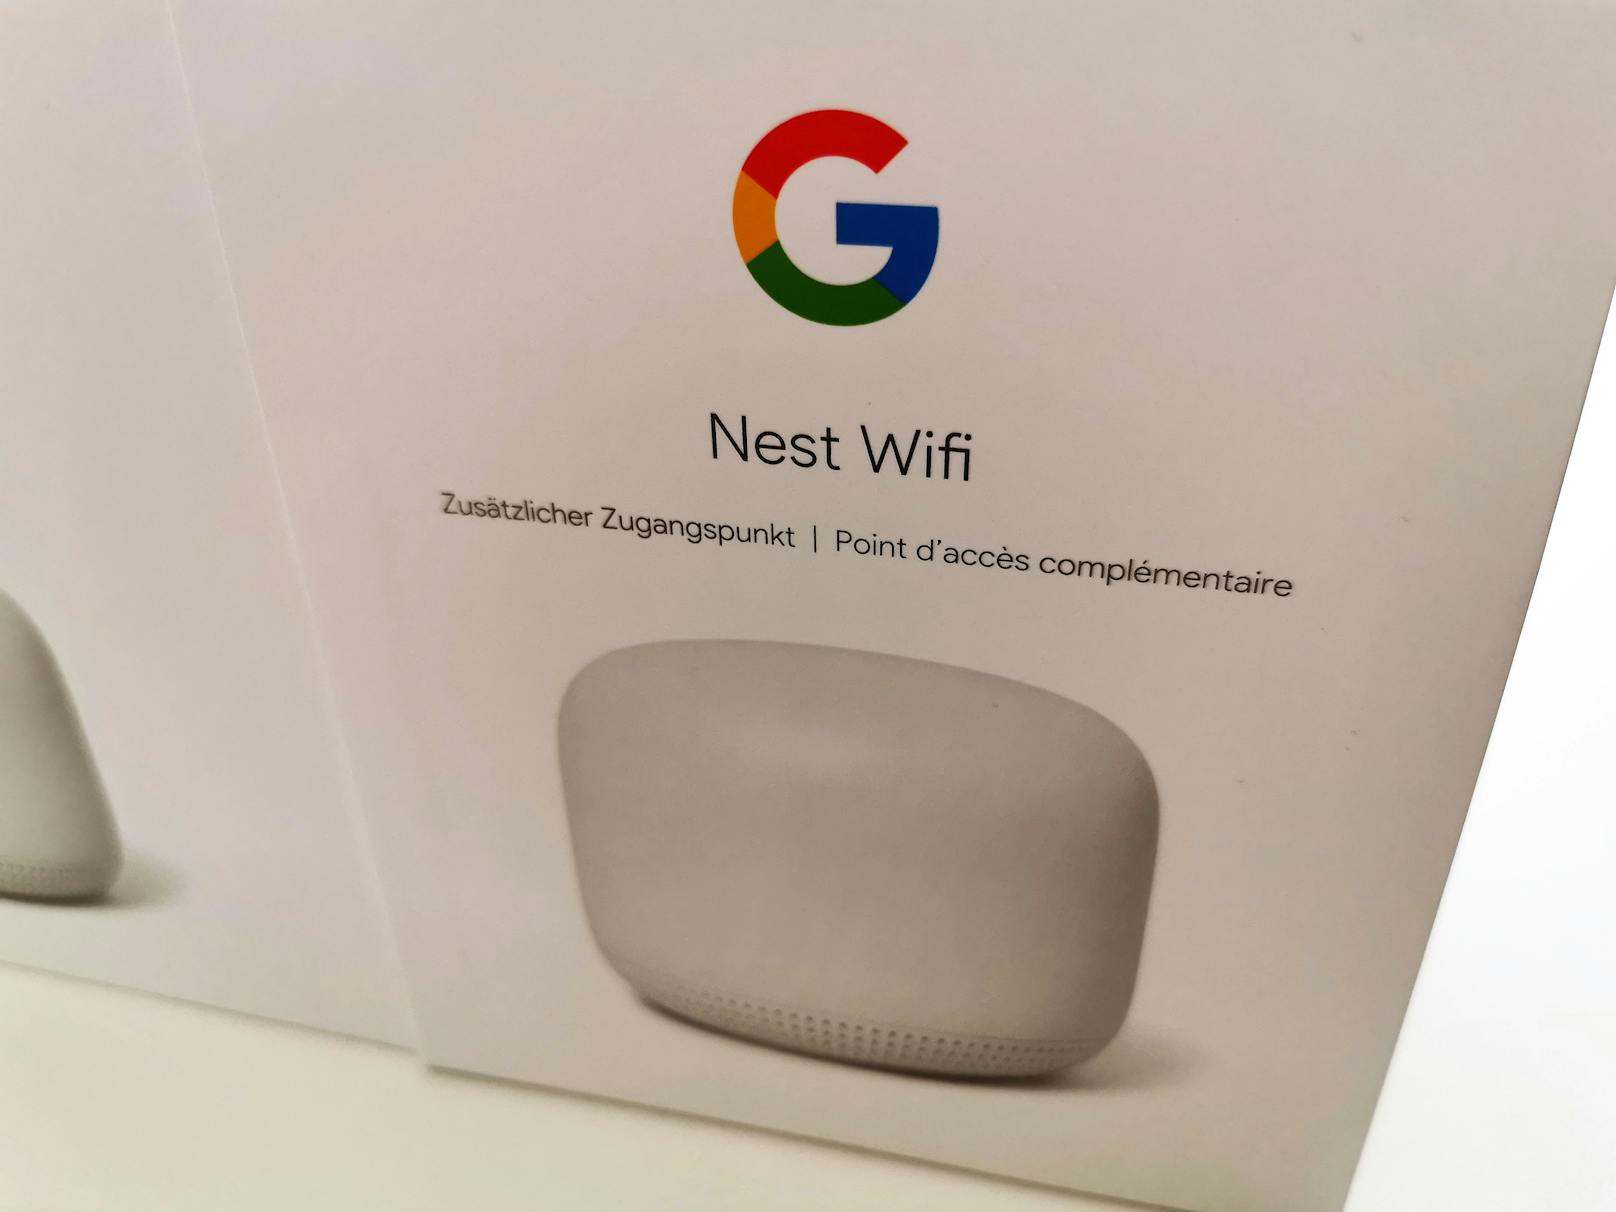 Nest Wifi wiederum kommt auf 160 Euro beim Router, 260 Euro für Router und einen Zugangspunkt sowie 140 Euro für jeden zusätzlichen Zugangspunkt. Vorteile: Schneller, reichweitenstärker und jeder Zugangspunkt ist auch ein Smart Speaker.